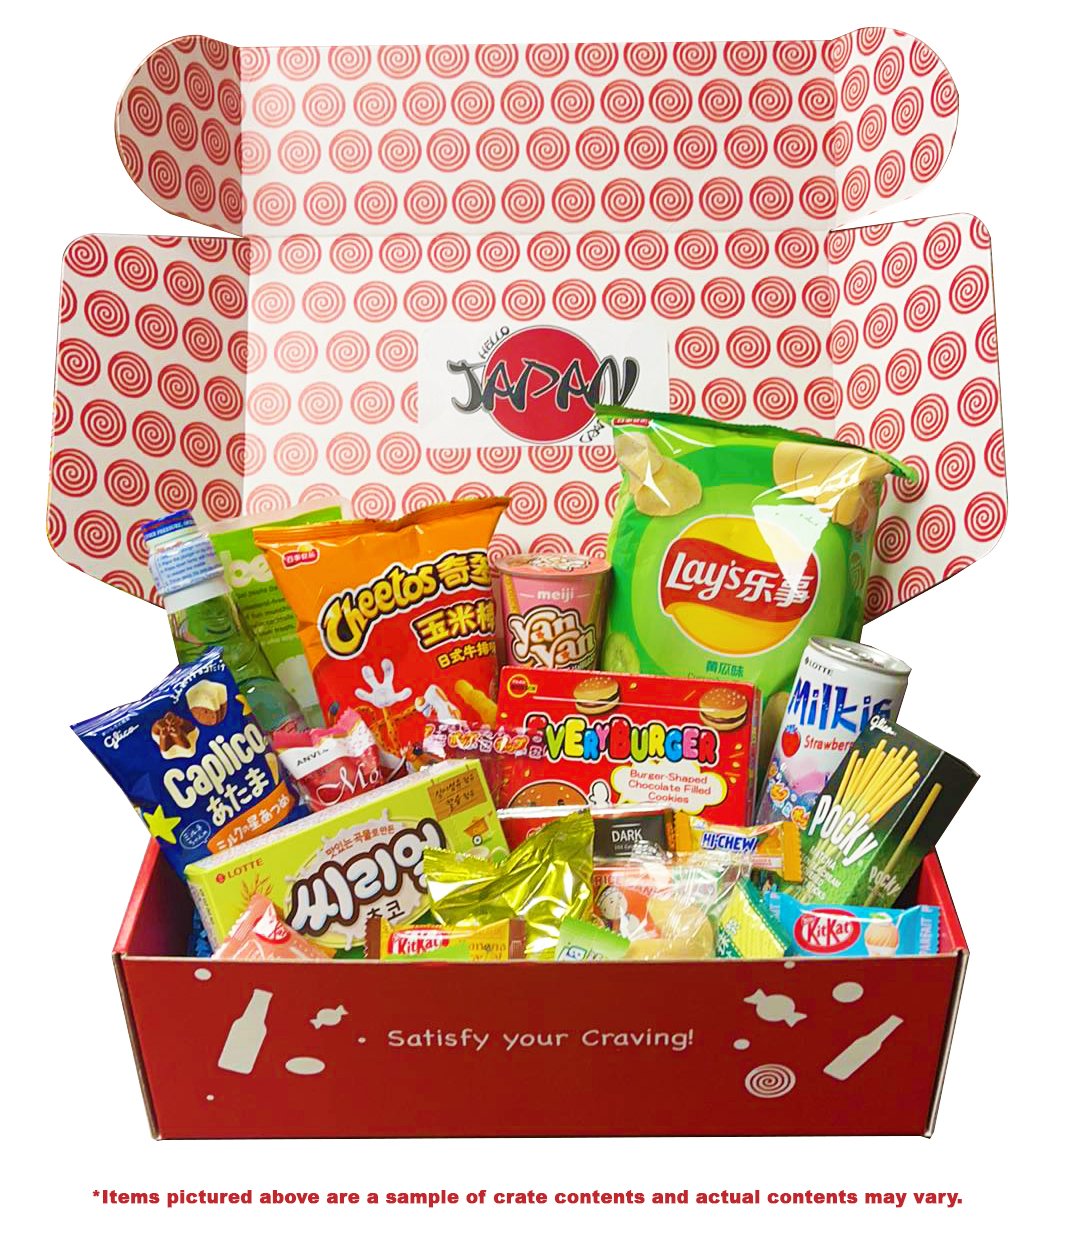 Sweets & Geeks Hello Japan Crate